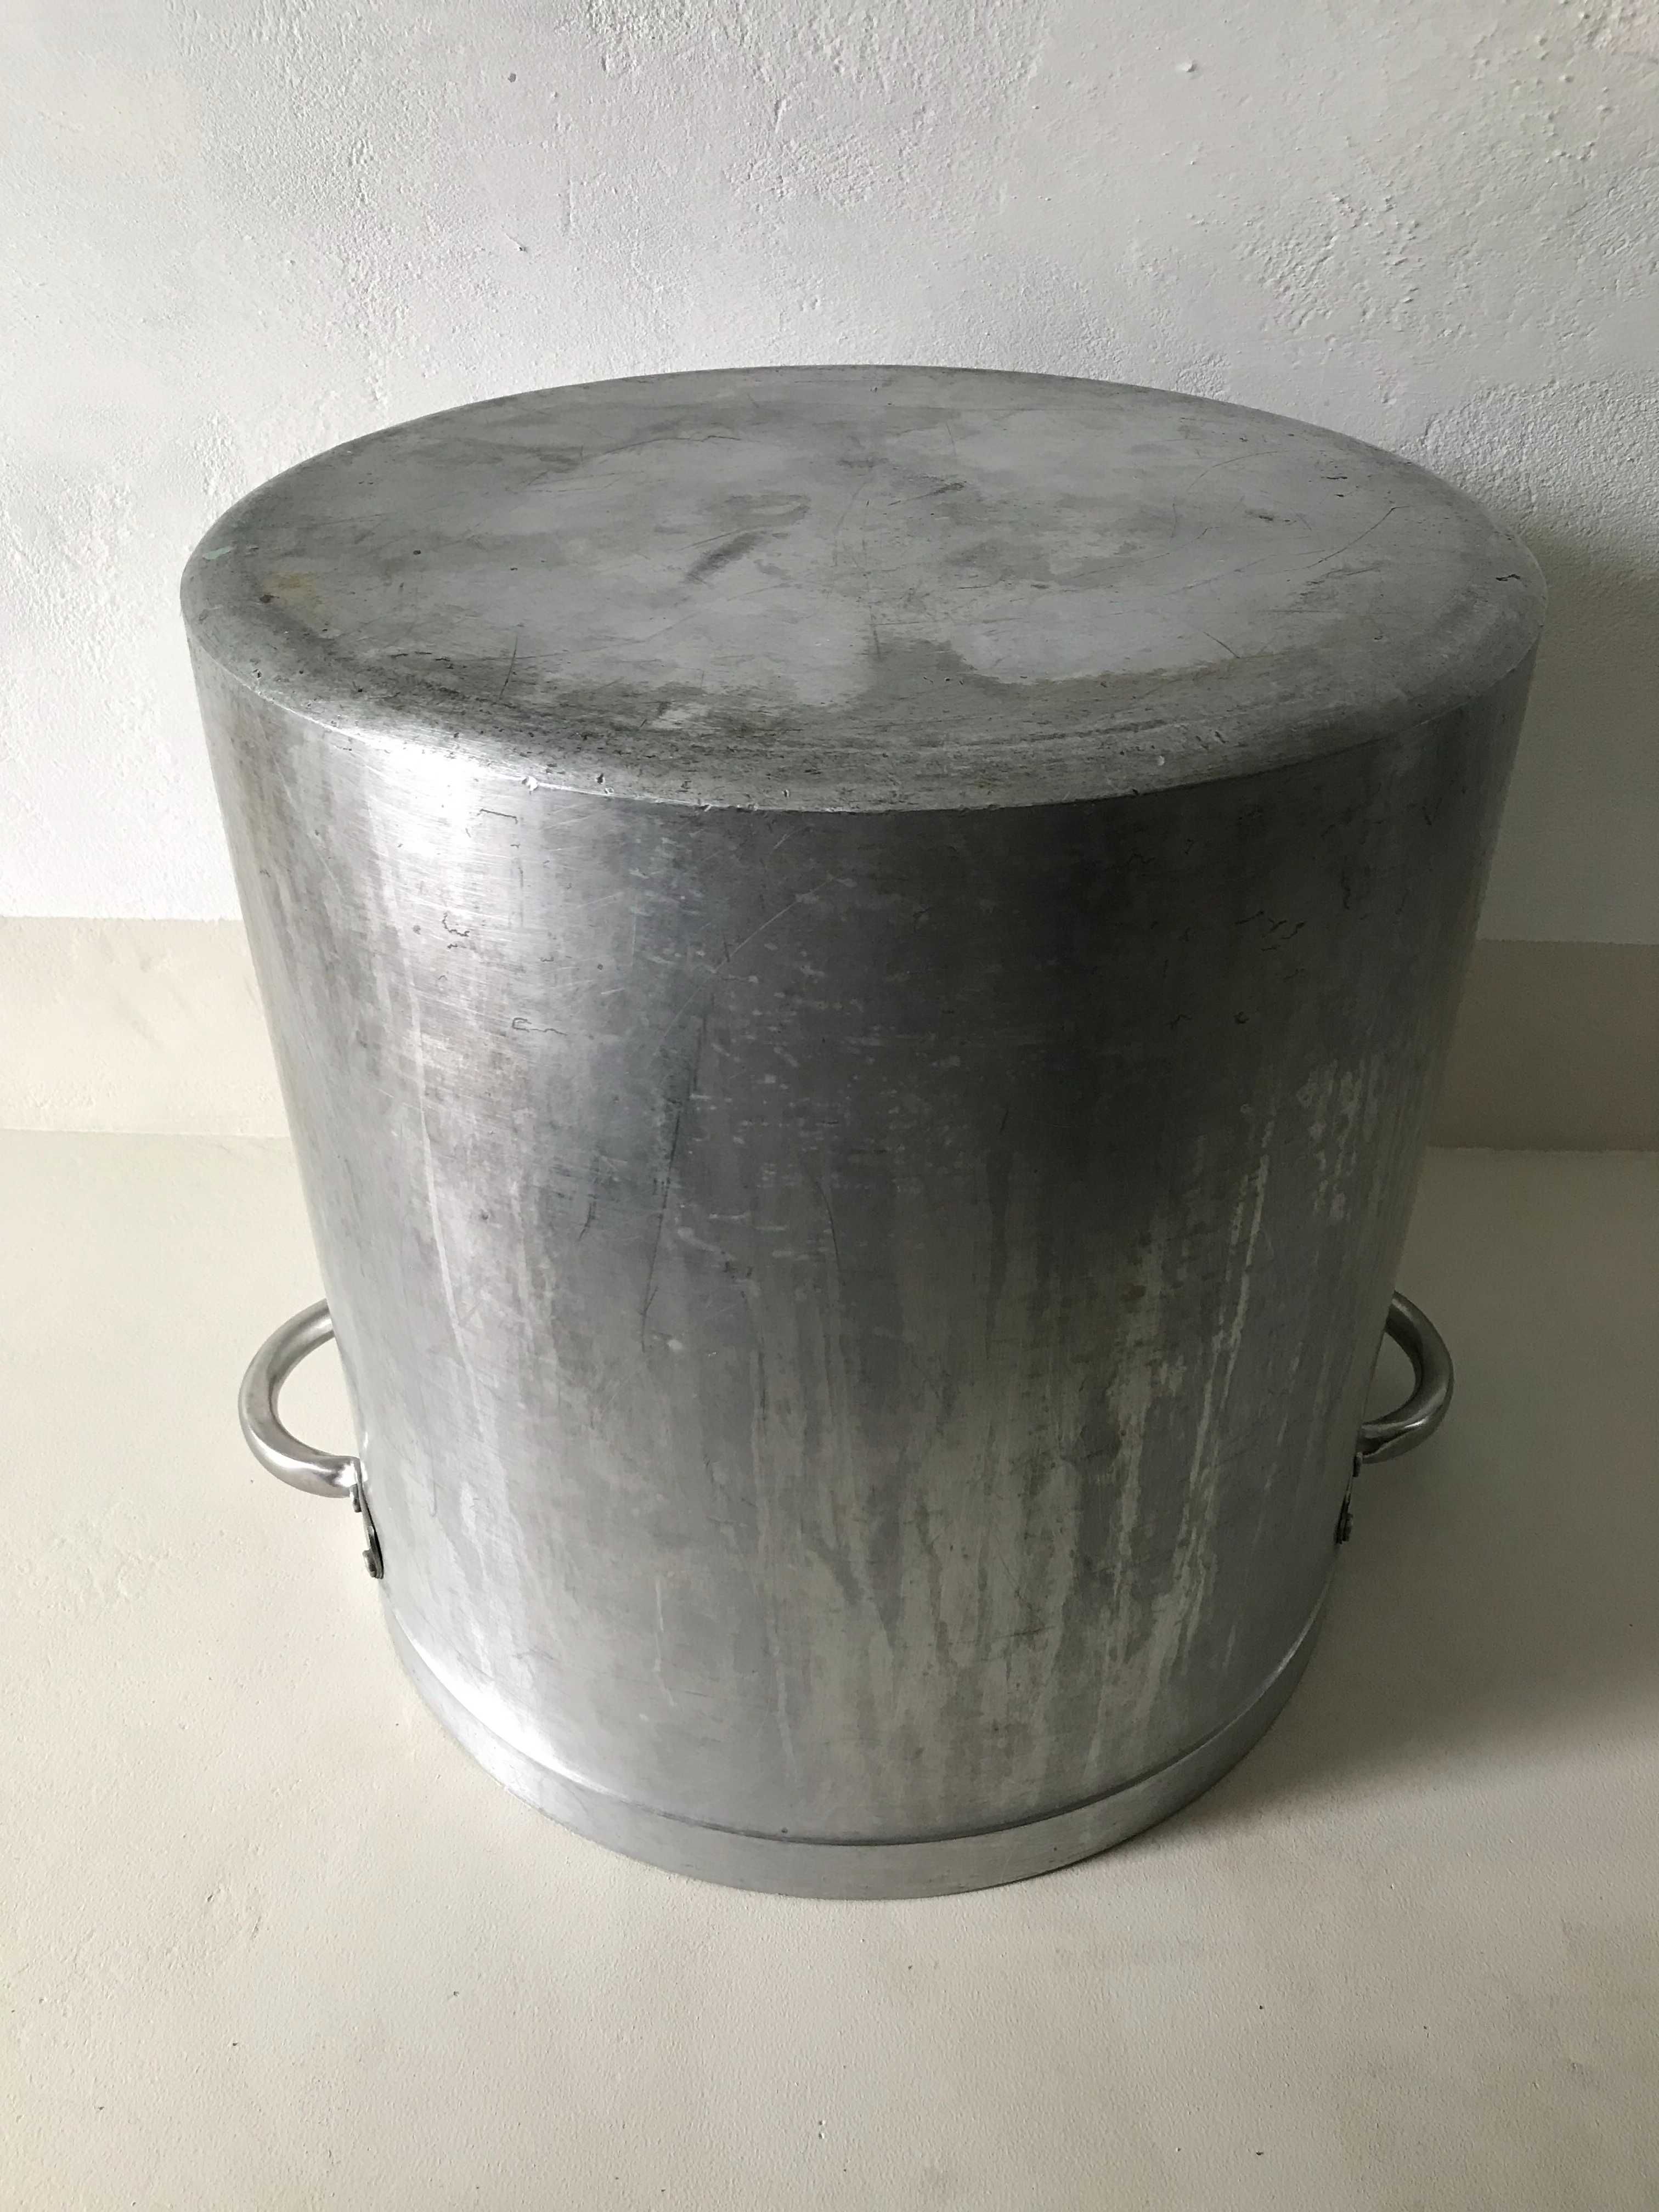 Cazan (oala) din Aluminiu - 22,5 L. Capac.